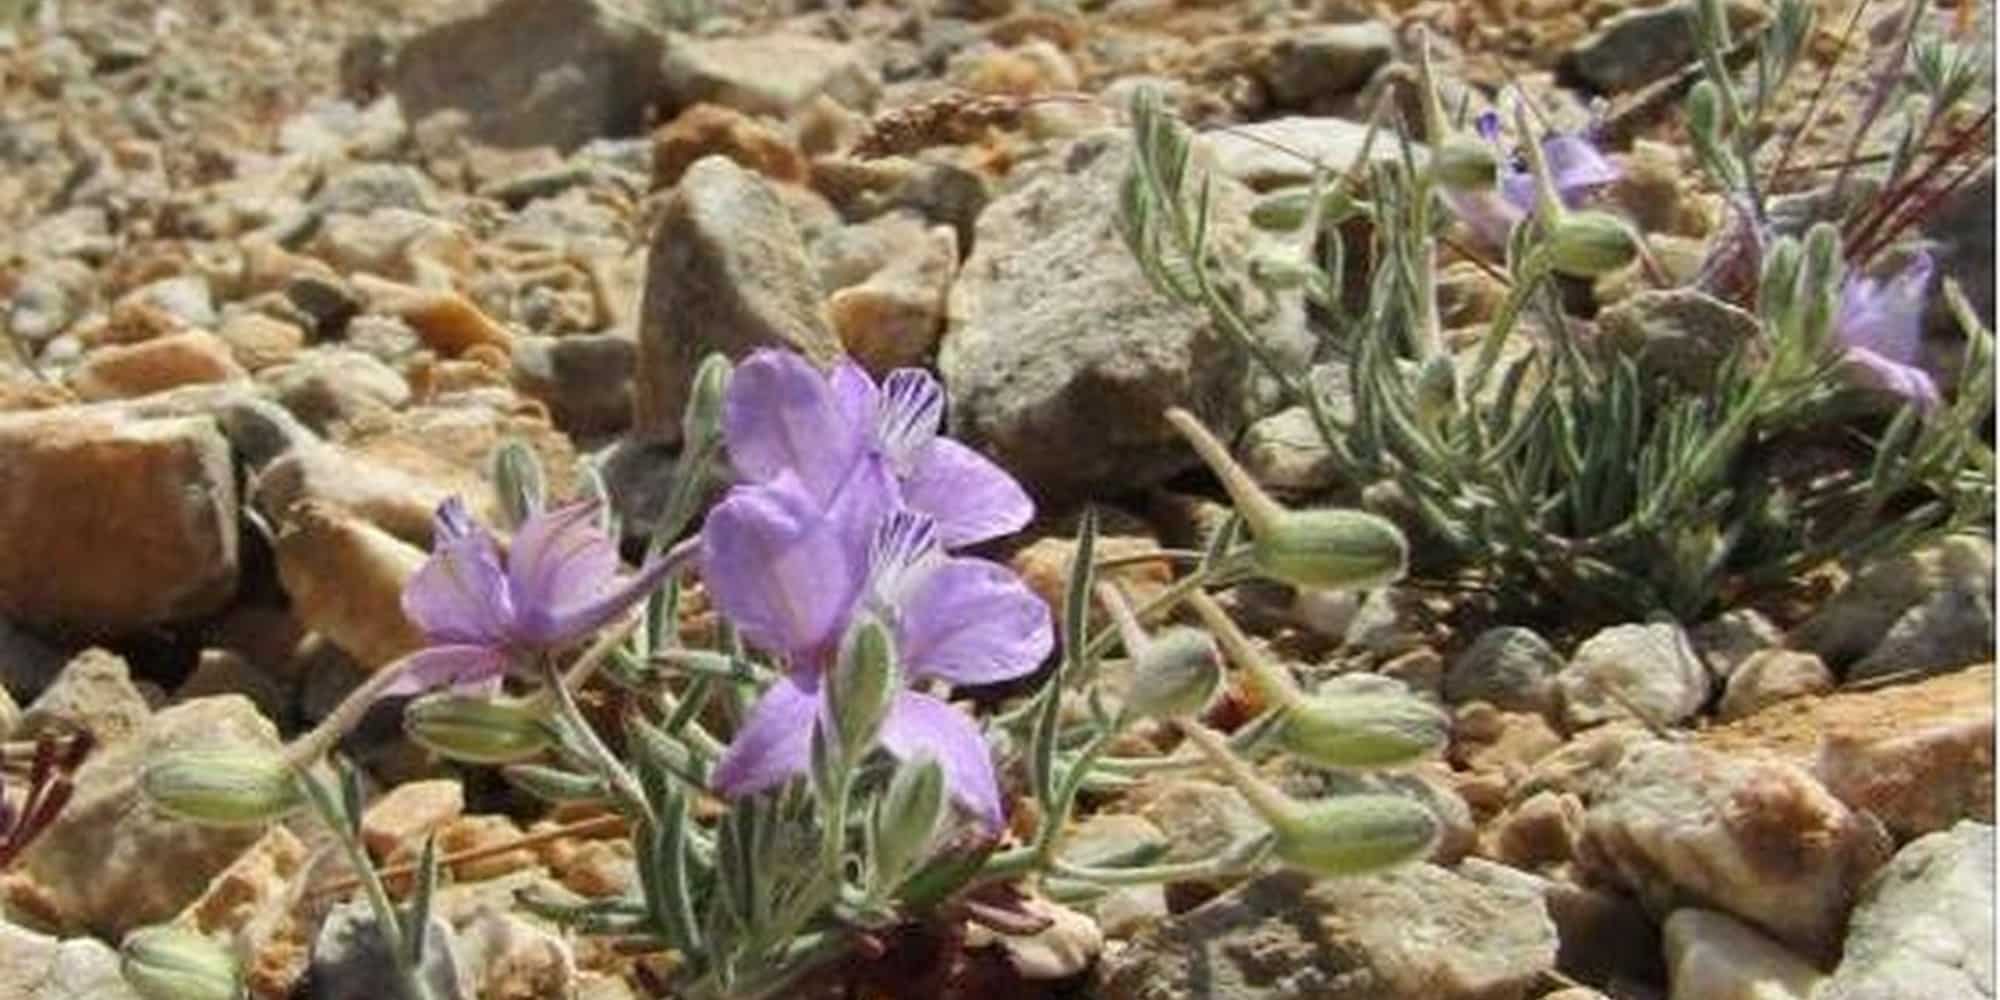 fyto samos 7 6 23 - Σπάνιο φυτό βρέθηκε μετά από 61 χρόνια στη Σάμο (εικόνα)